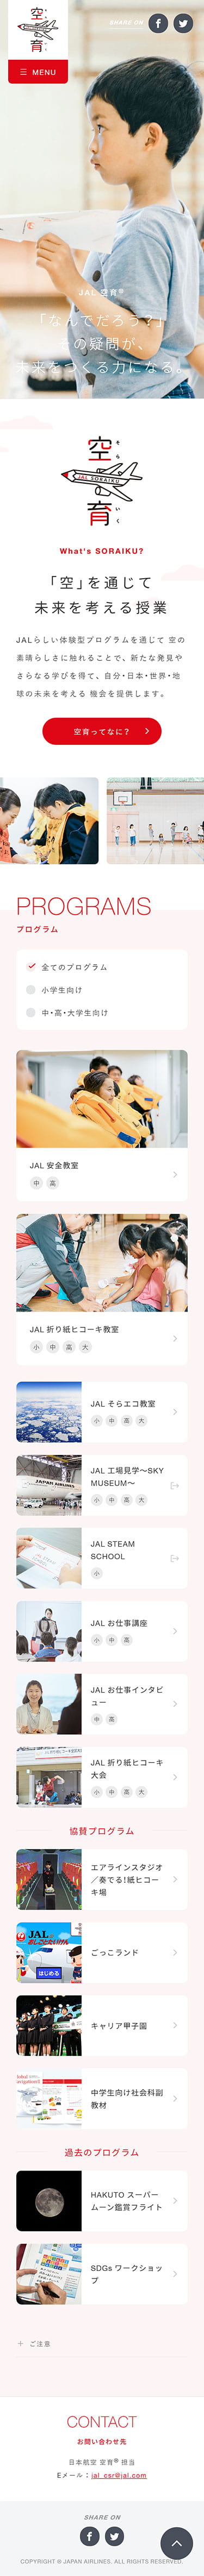 空育® | JAL企業サイト